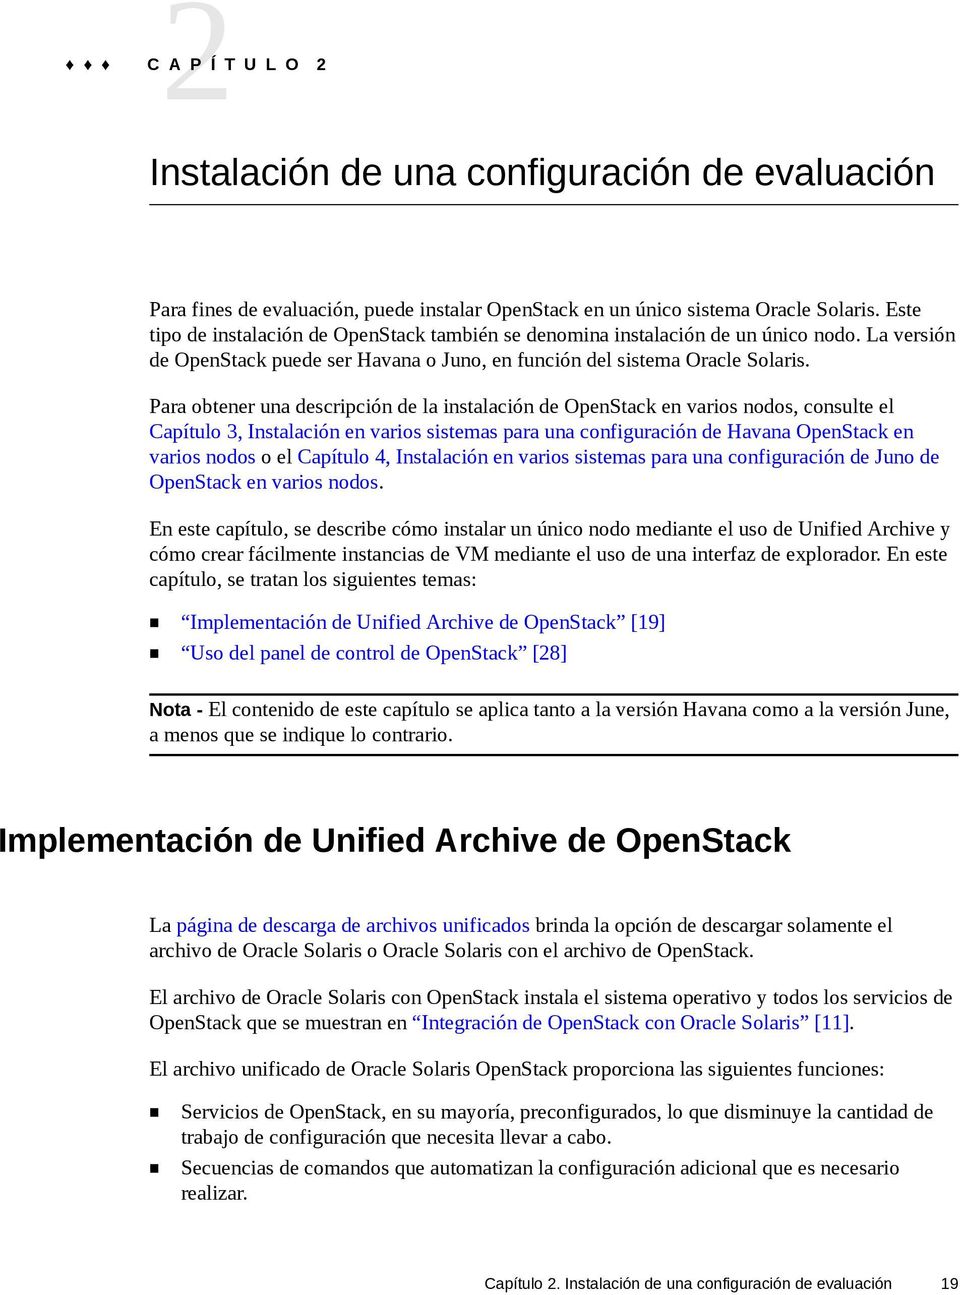 Para obtener una descripción de la instalación de OpenStack en varios nodos, consulte el Capítulo 3, Instalación en varios sistemas para una configuración de Havana OpenStack en varios nodos o el